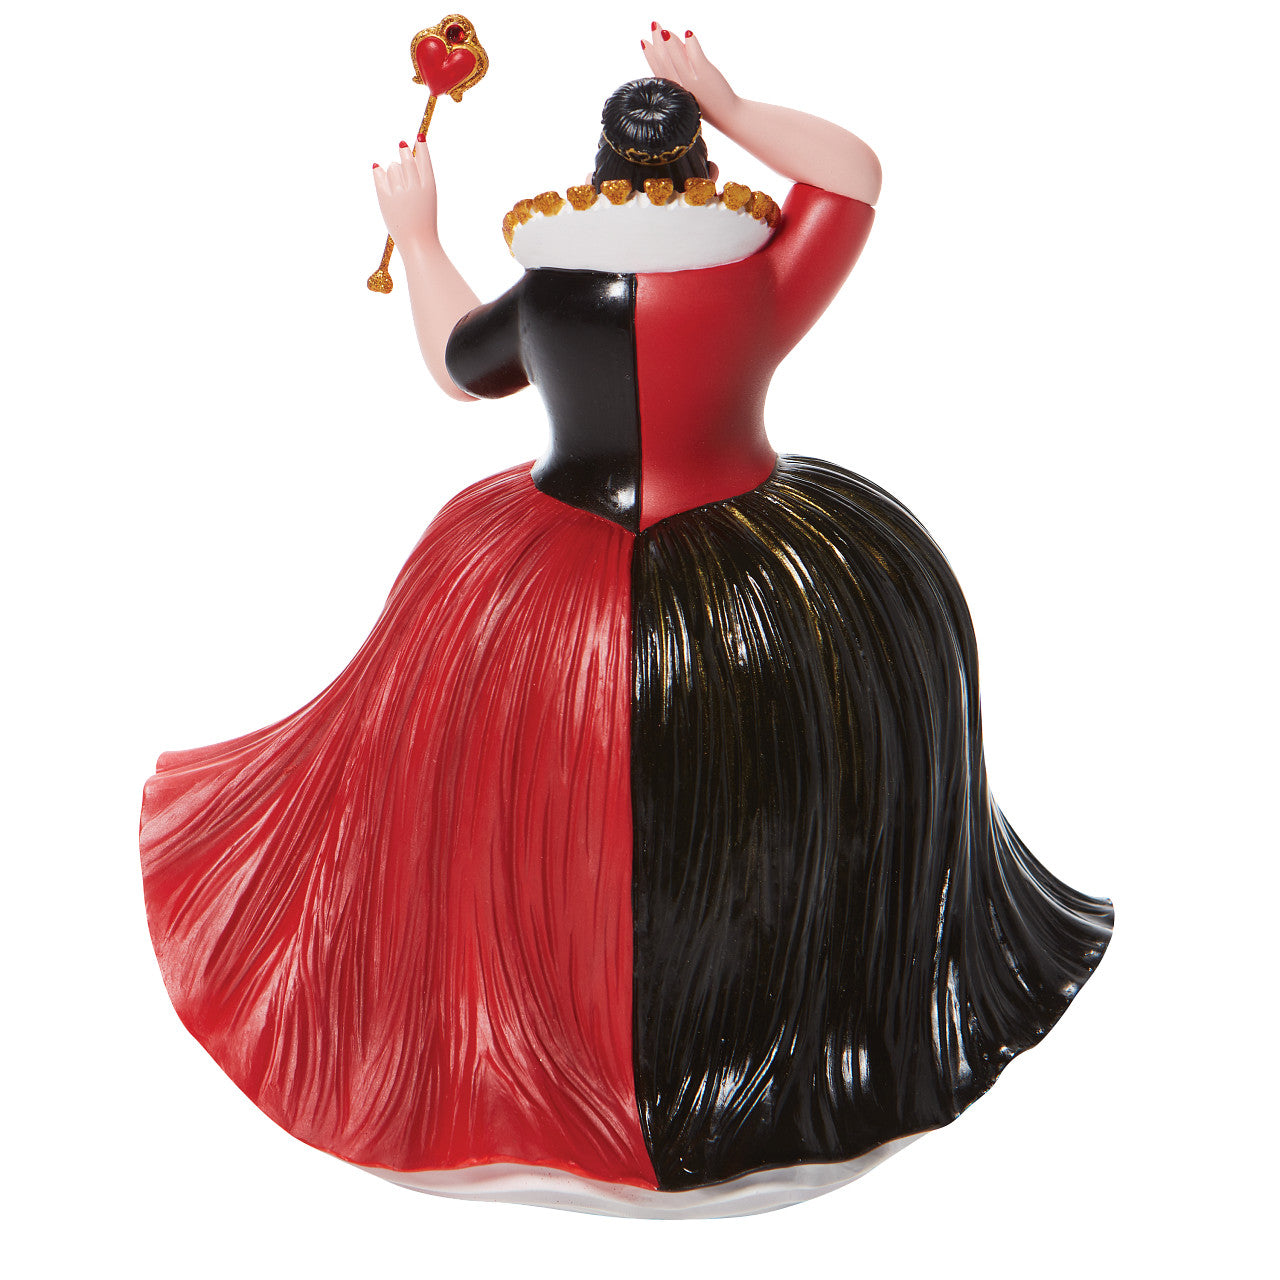 Queen of Hearts Figurine